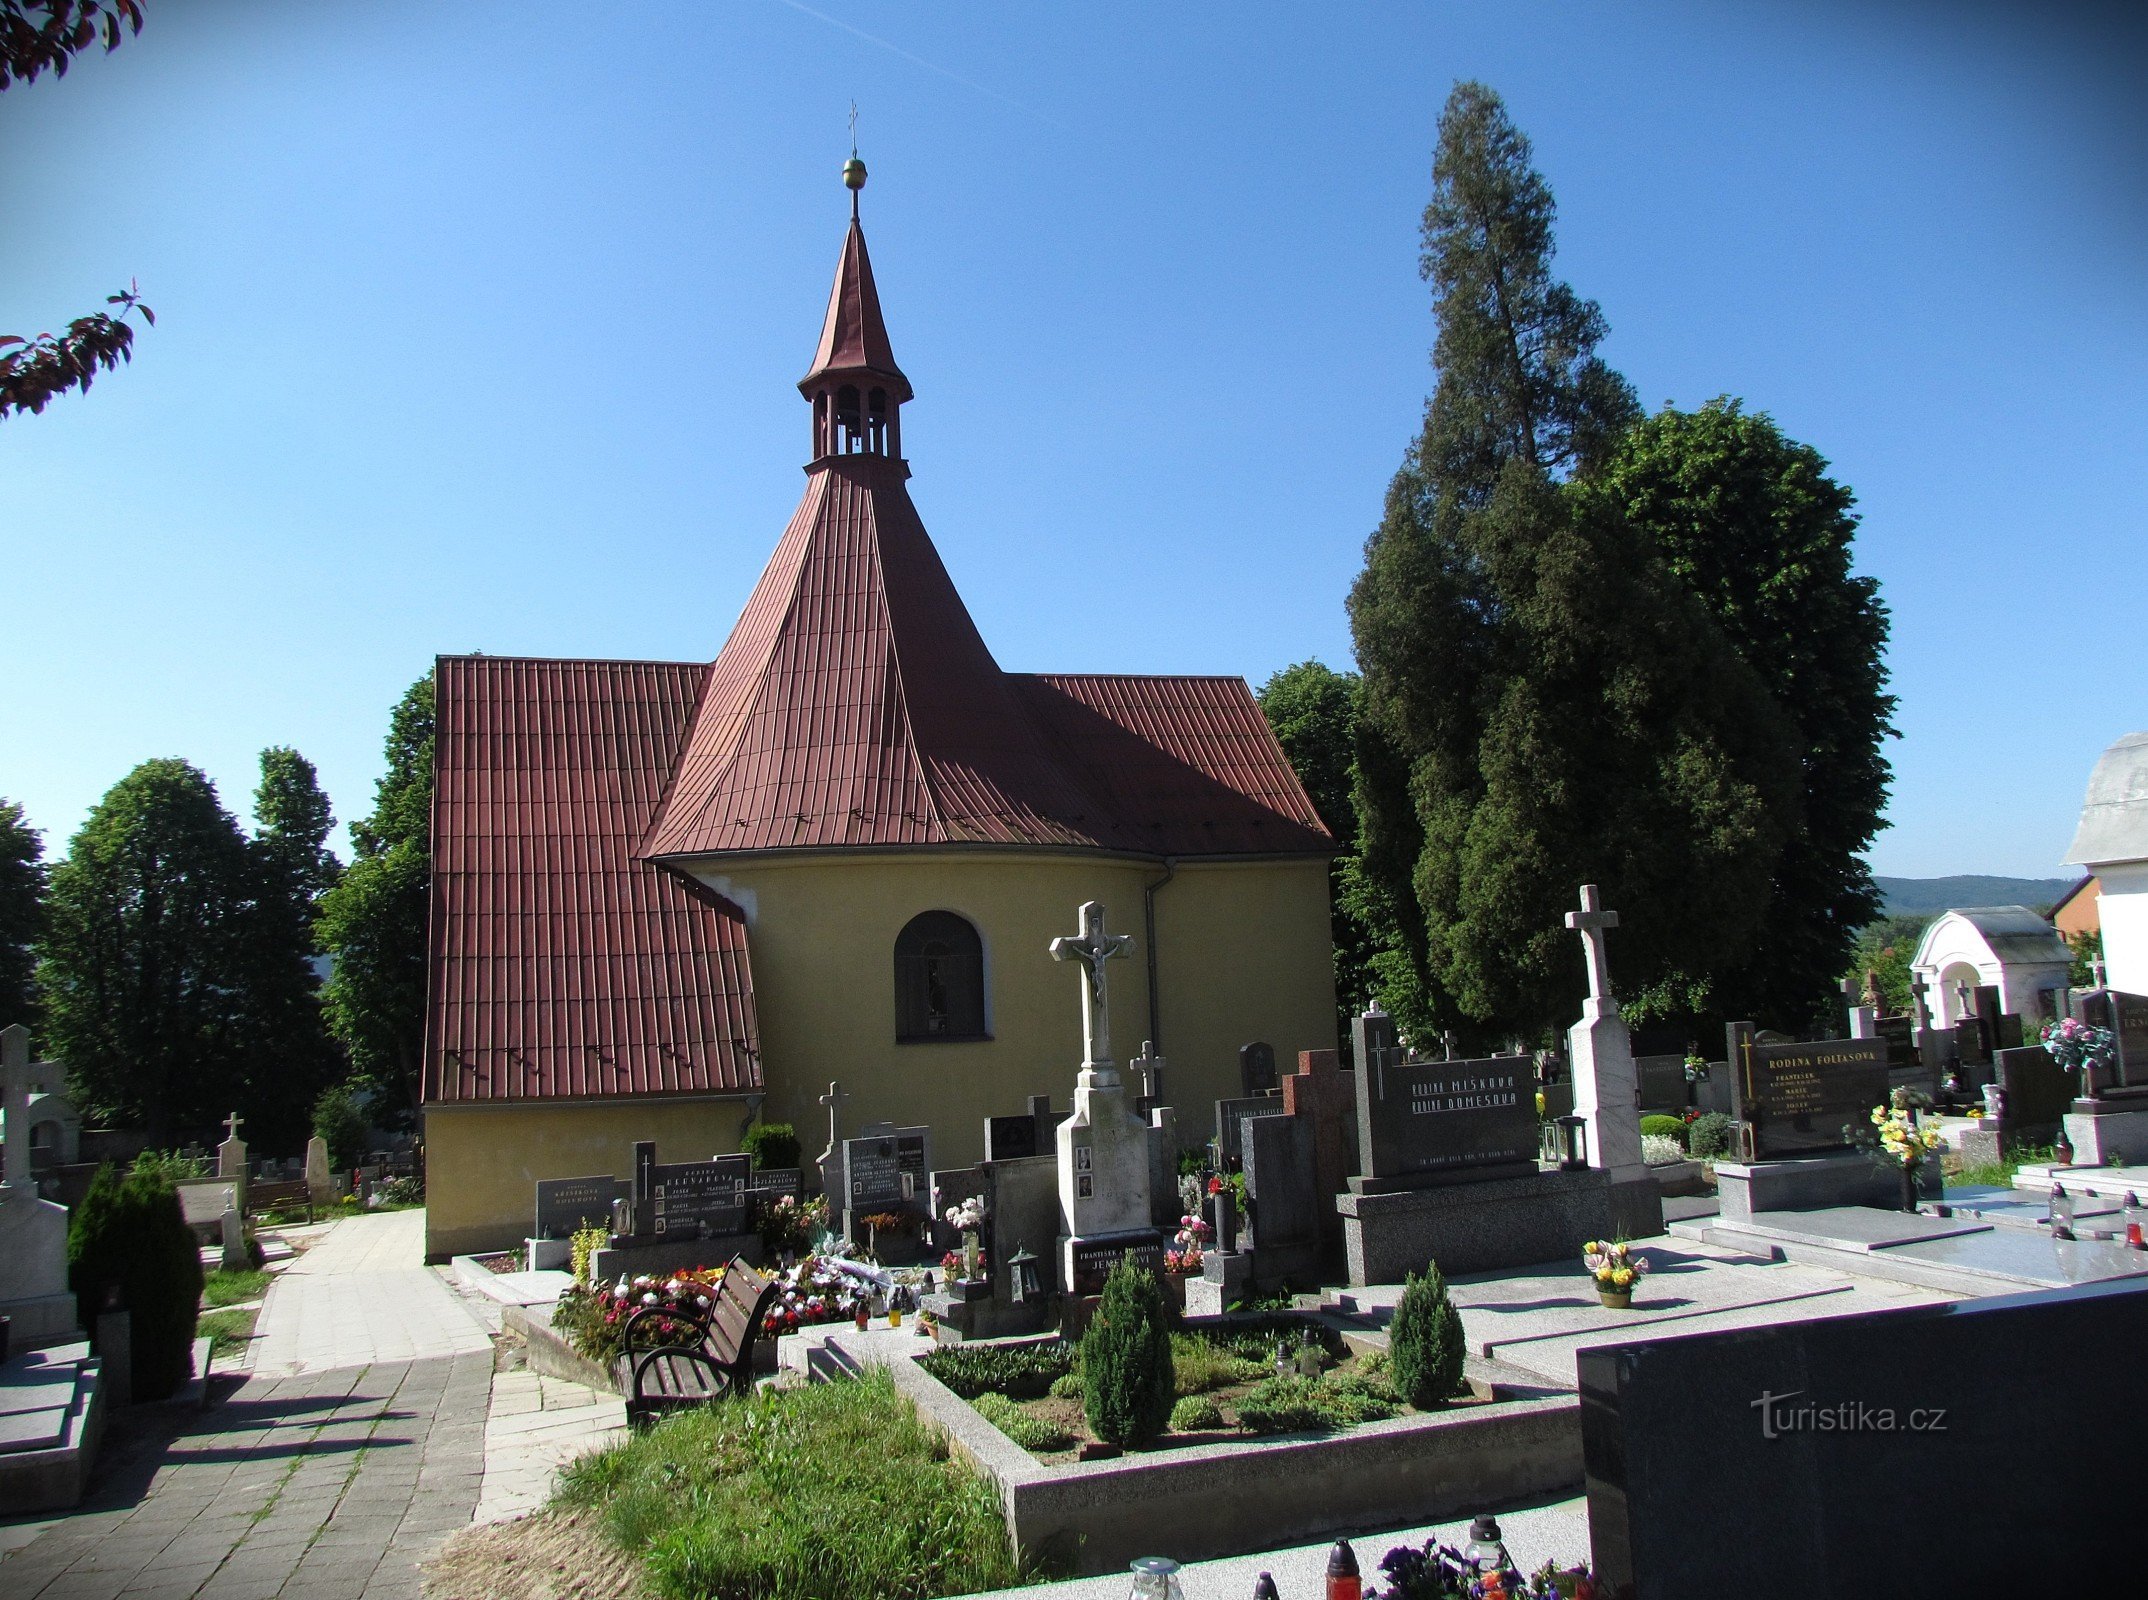 Drahotuše - kapela sv. Ane in križev pot